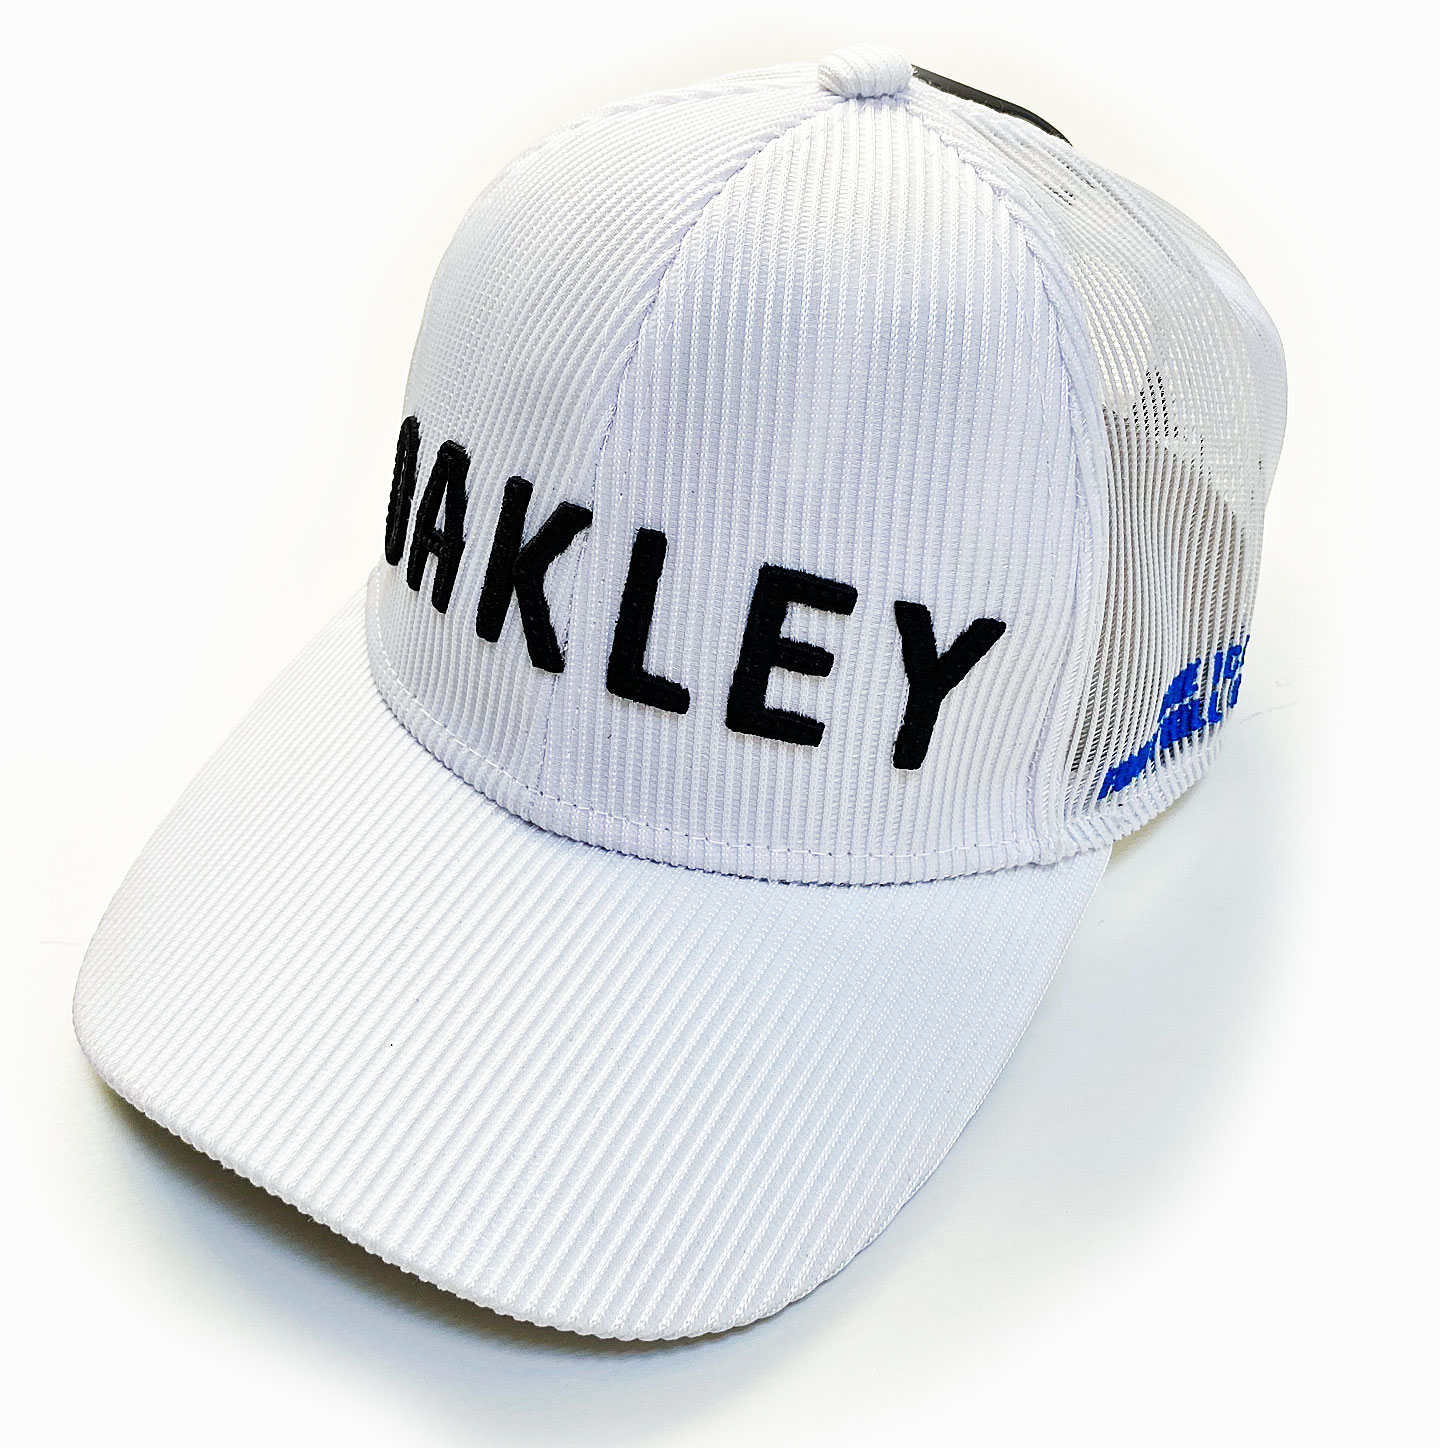 オークリー ゴルフ キャップ OAKLEY MESH CAP 22.0 ホワイト FOS901010 100 OAKLEY ロゴ 帽子 国内正規品